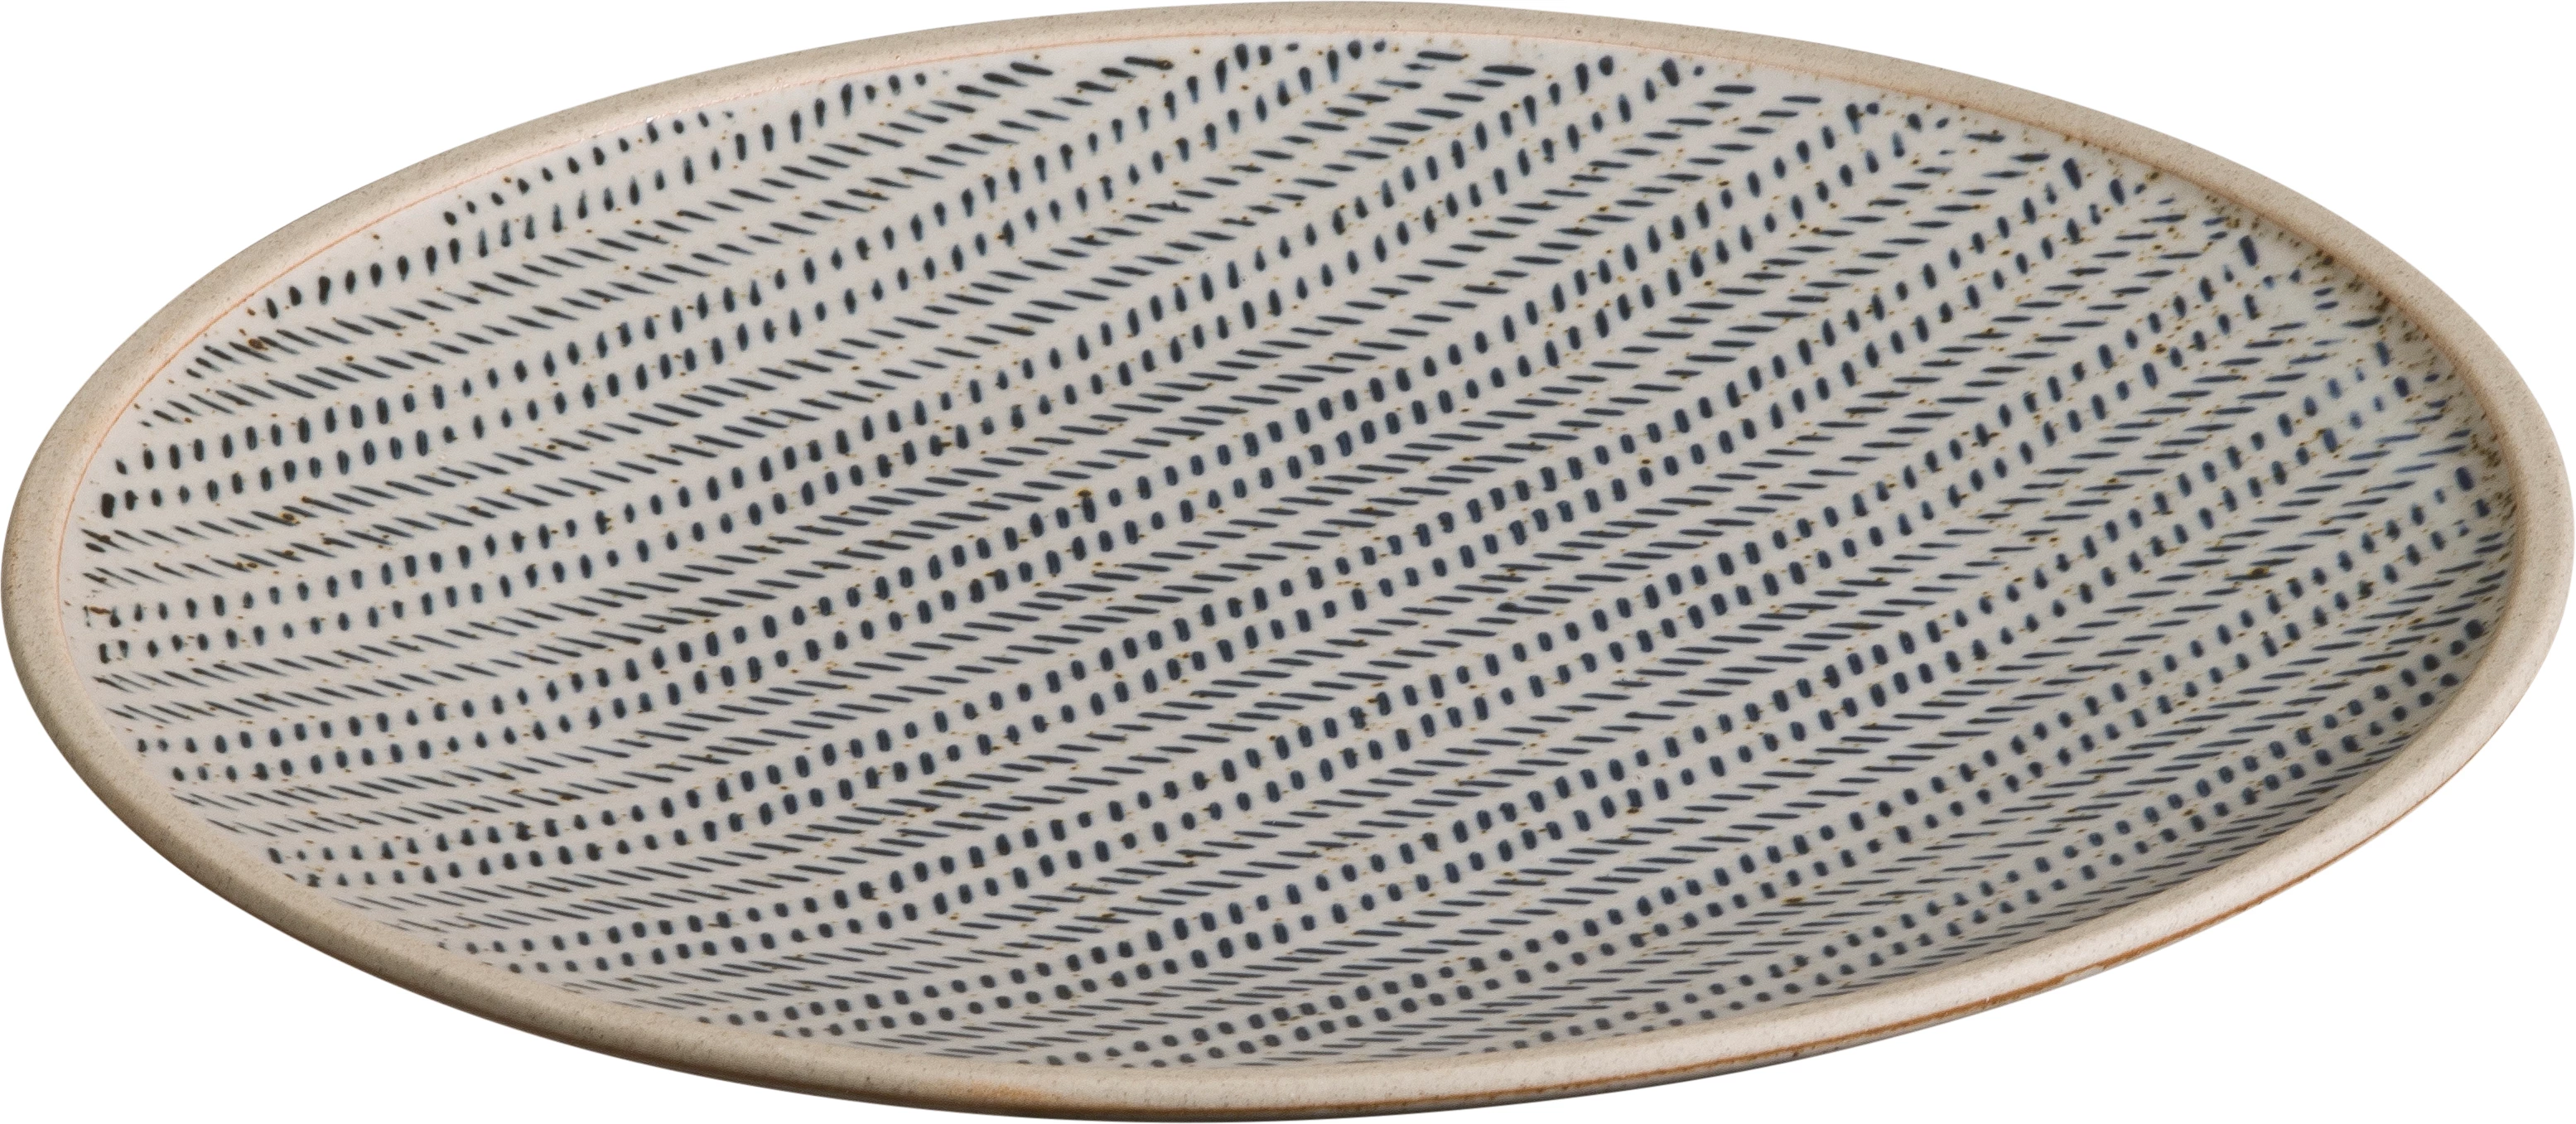 Sorelle tallerken uden fane, blå/grå, ø21 cm